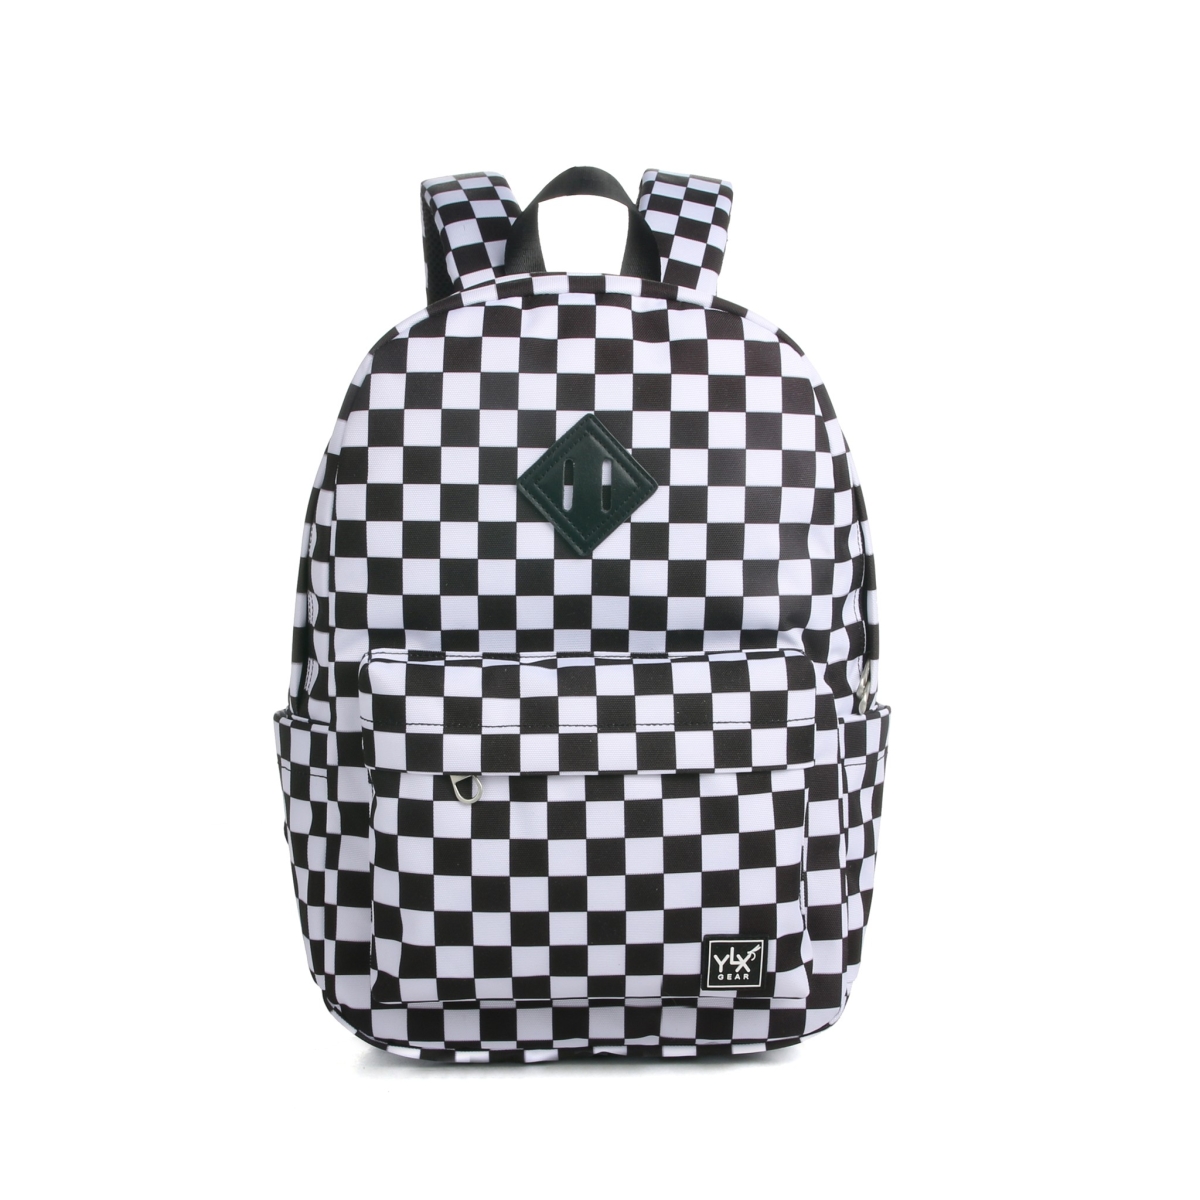 YLX Finch Backpack | Black & White Damier